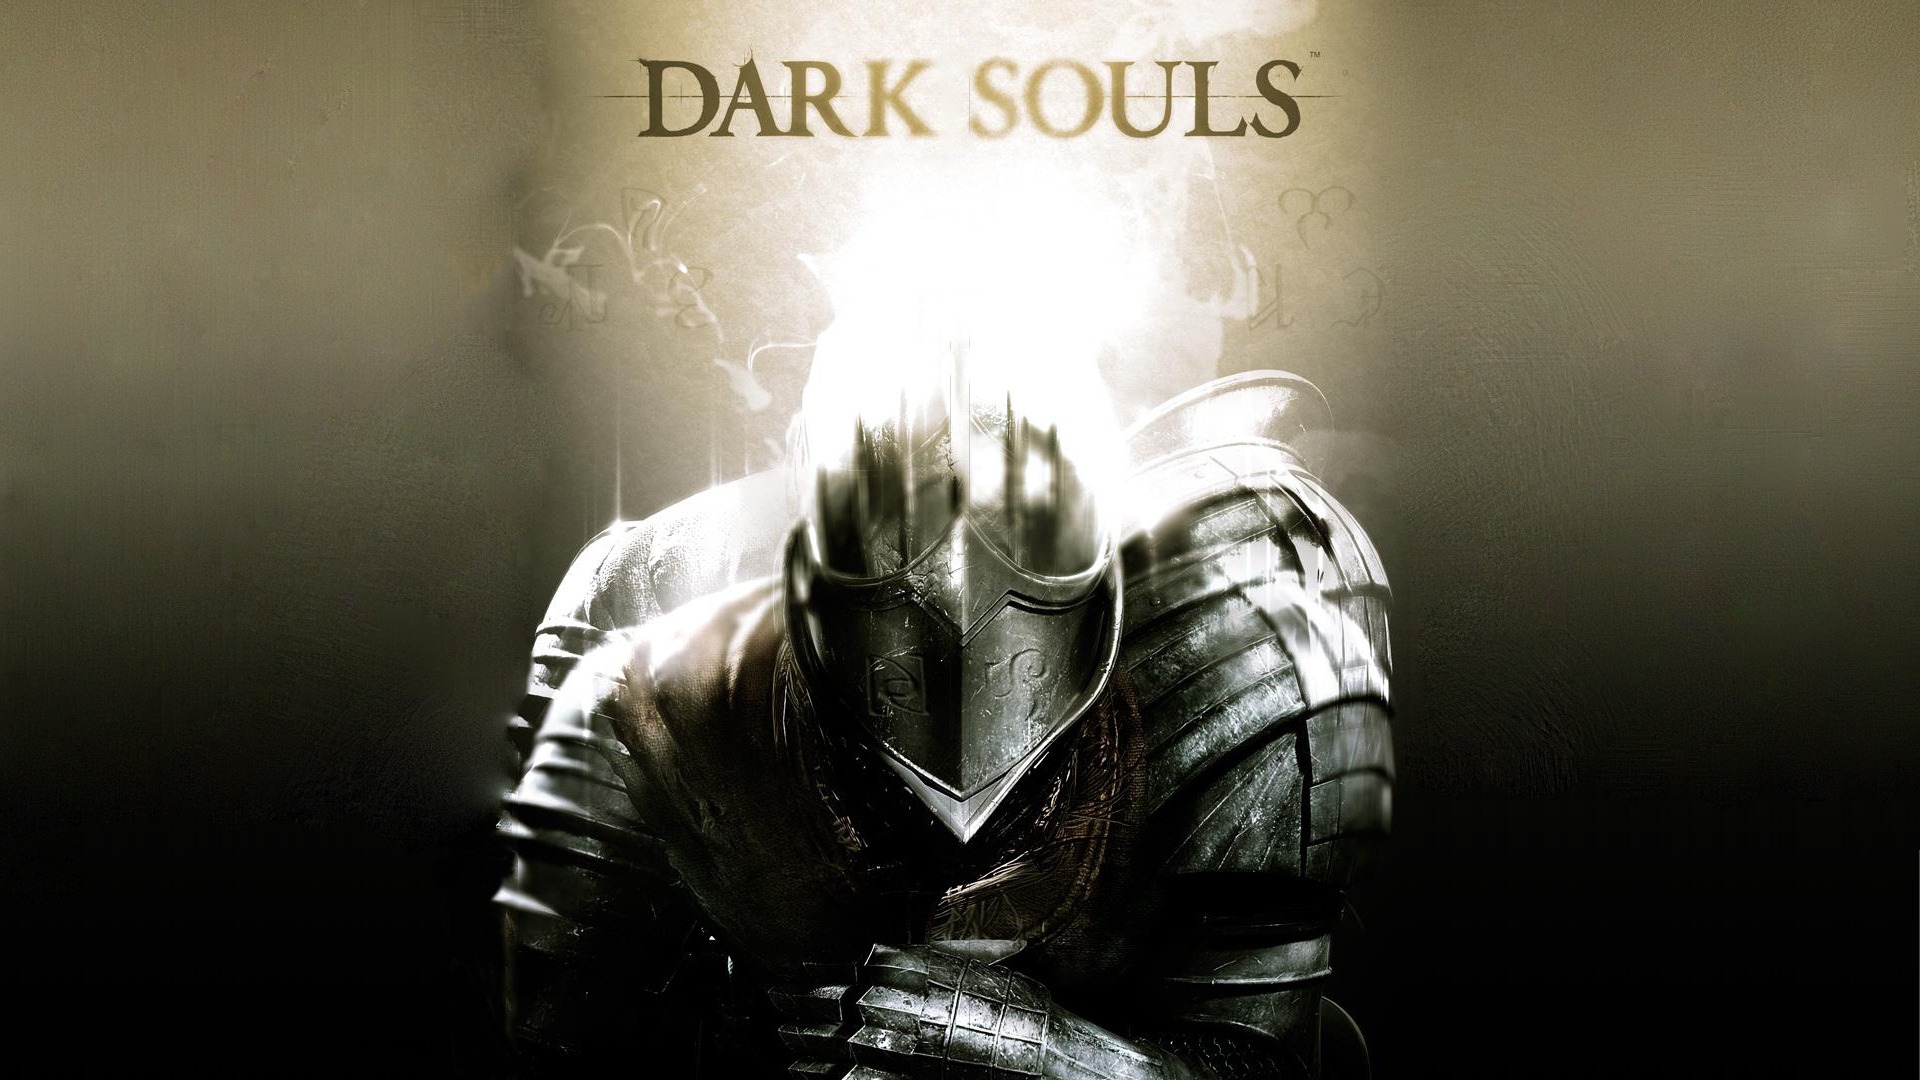 Dark Souls Poster for 1920 x 1080 HDTV 1080p resolution